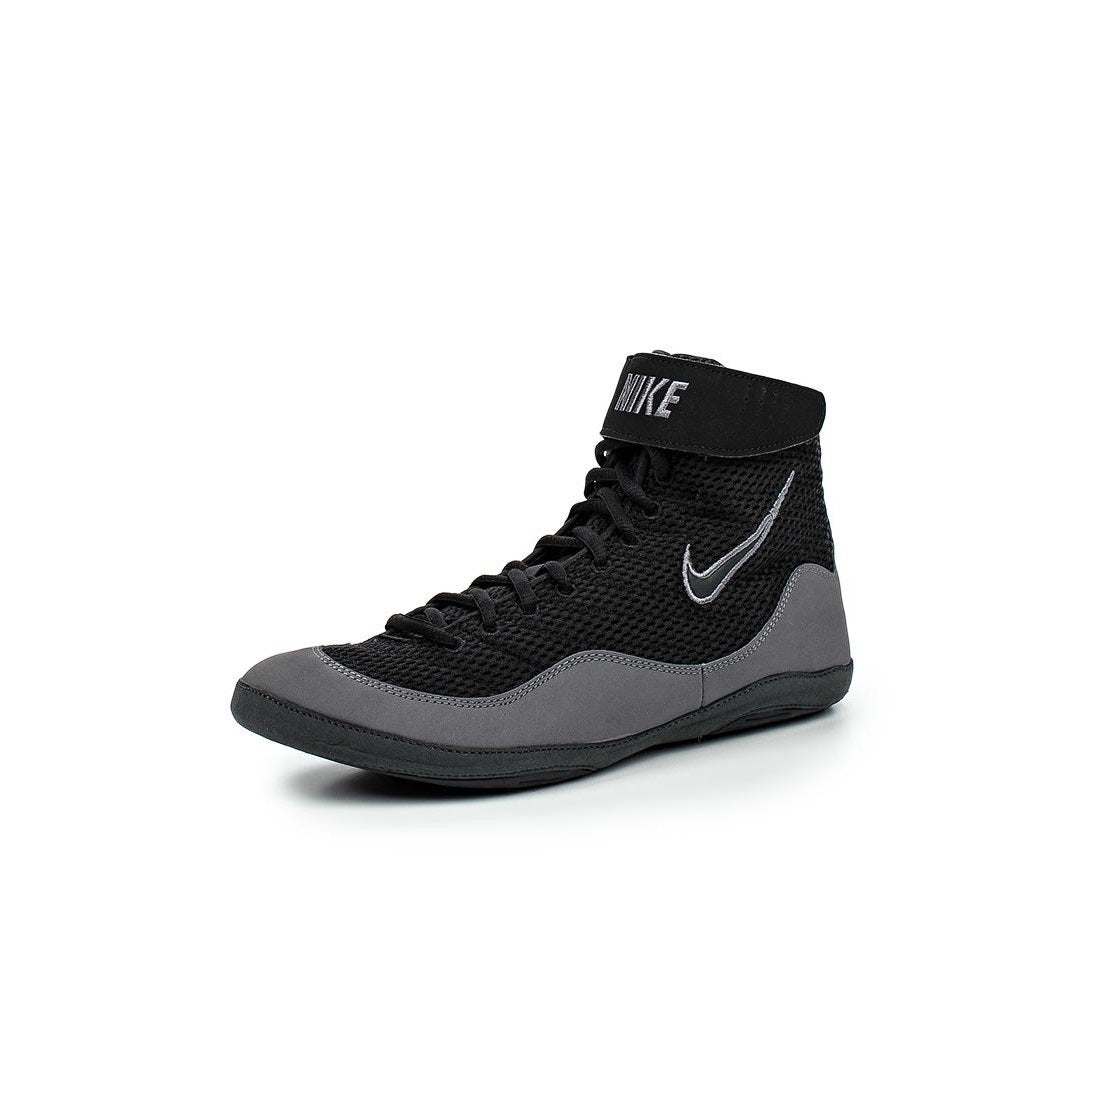 Chaussures de lutte Inflict 3 Nike - Noir/Gris